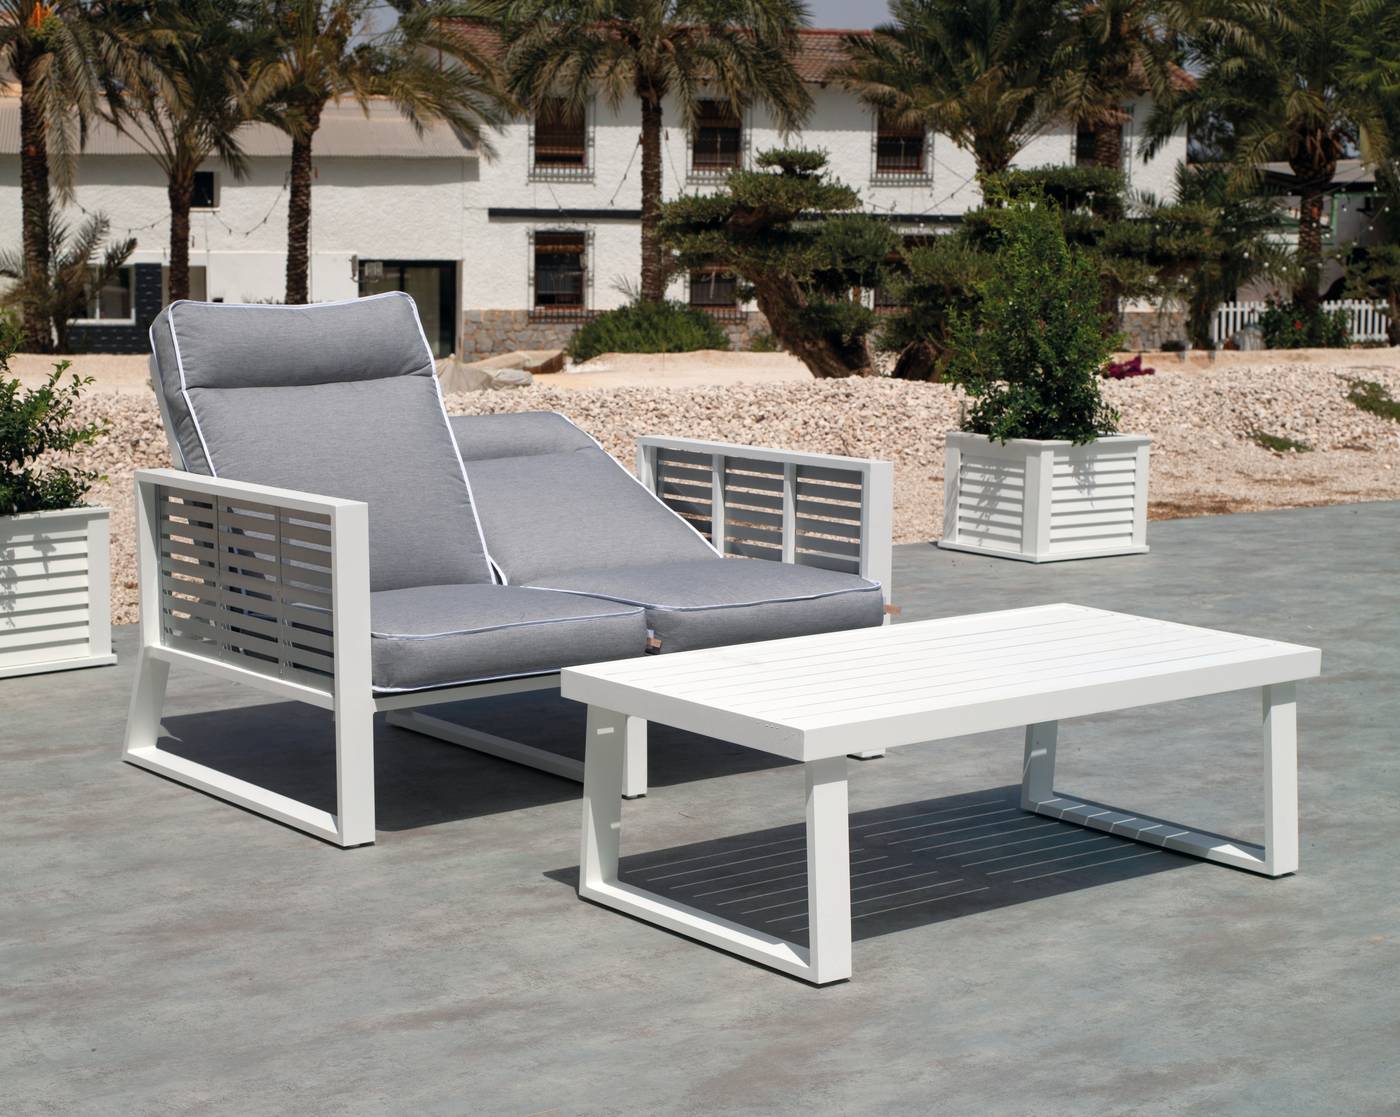 Sofá Aluminio Luxe Samira-2 - Exclusivo sofá 2 plazas reclinable de alumnio bicolor, con cojines gran confort desenfundables.